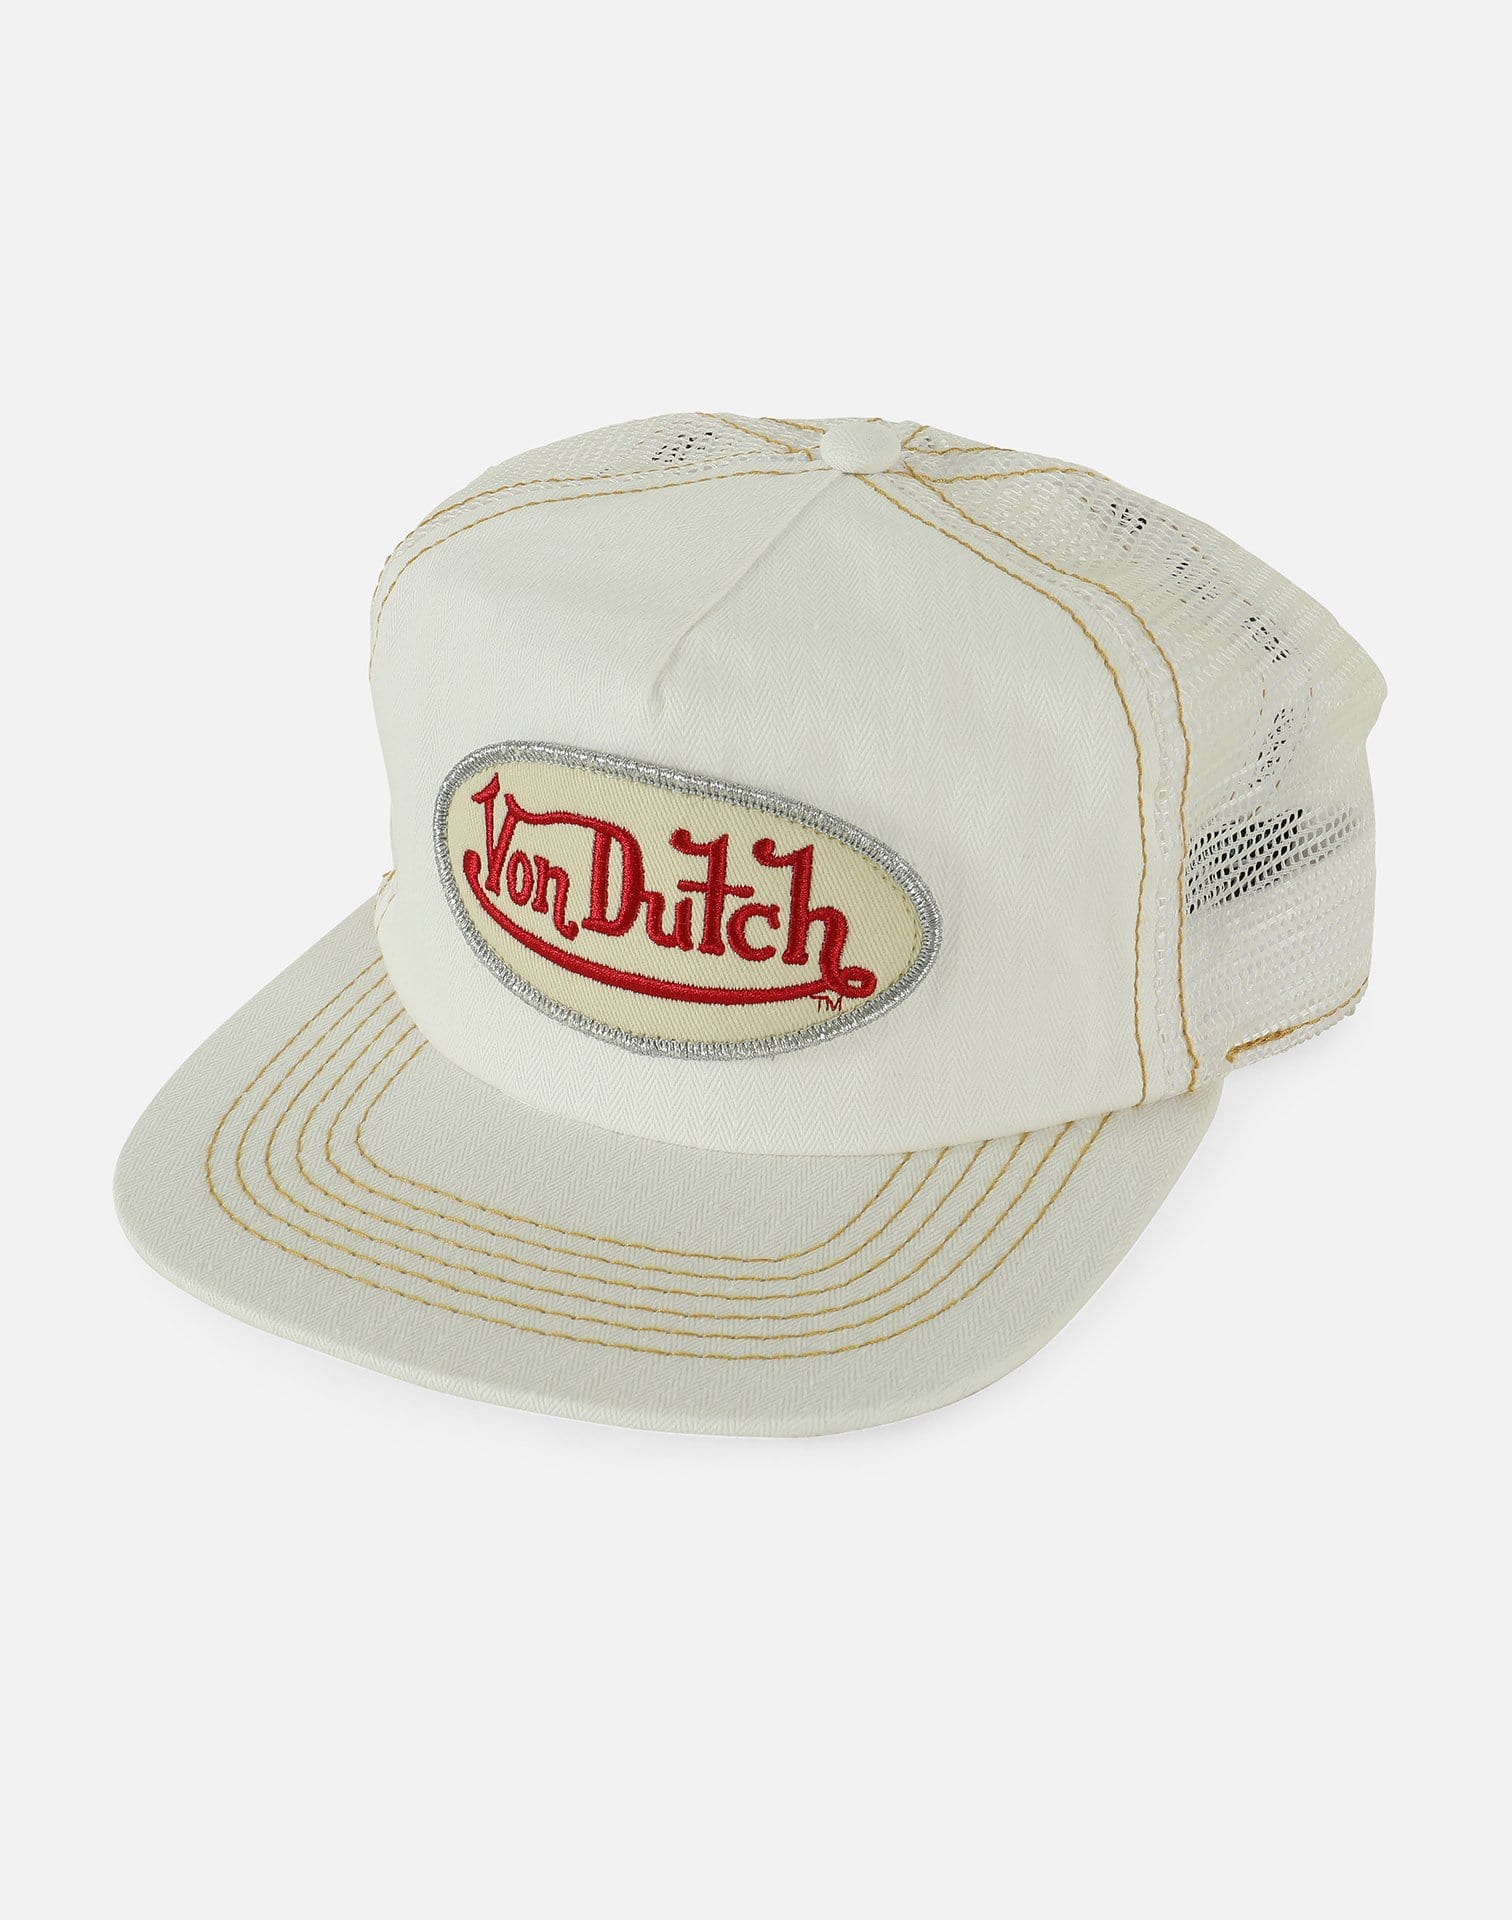 Von Dutch Vintage Trucker Snapback Hat